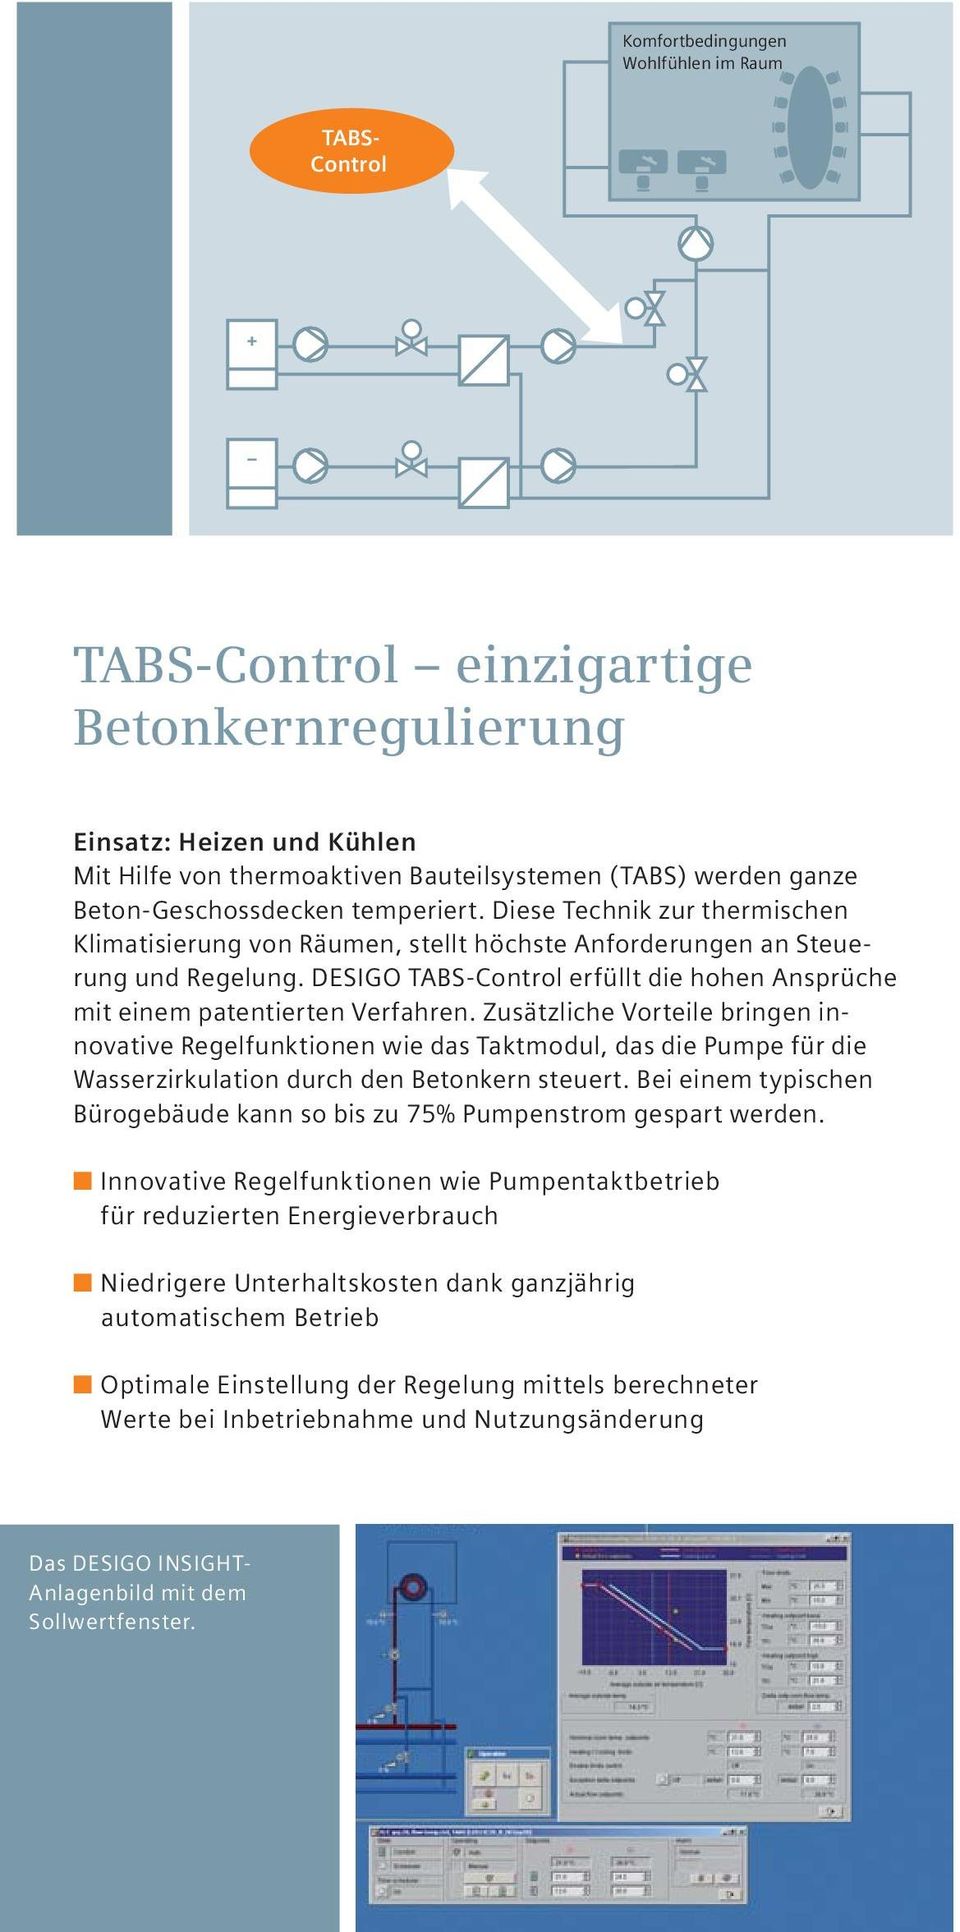 DESIGO TABS-Control erfüllt die hohen Ansprüche mit einem patentierten Verfahren.